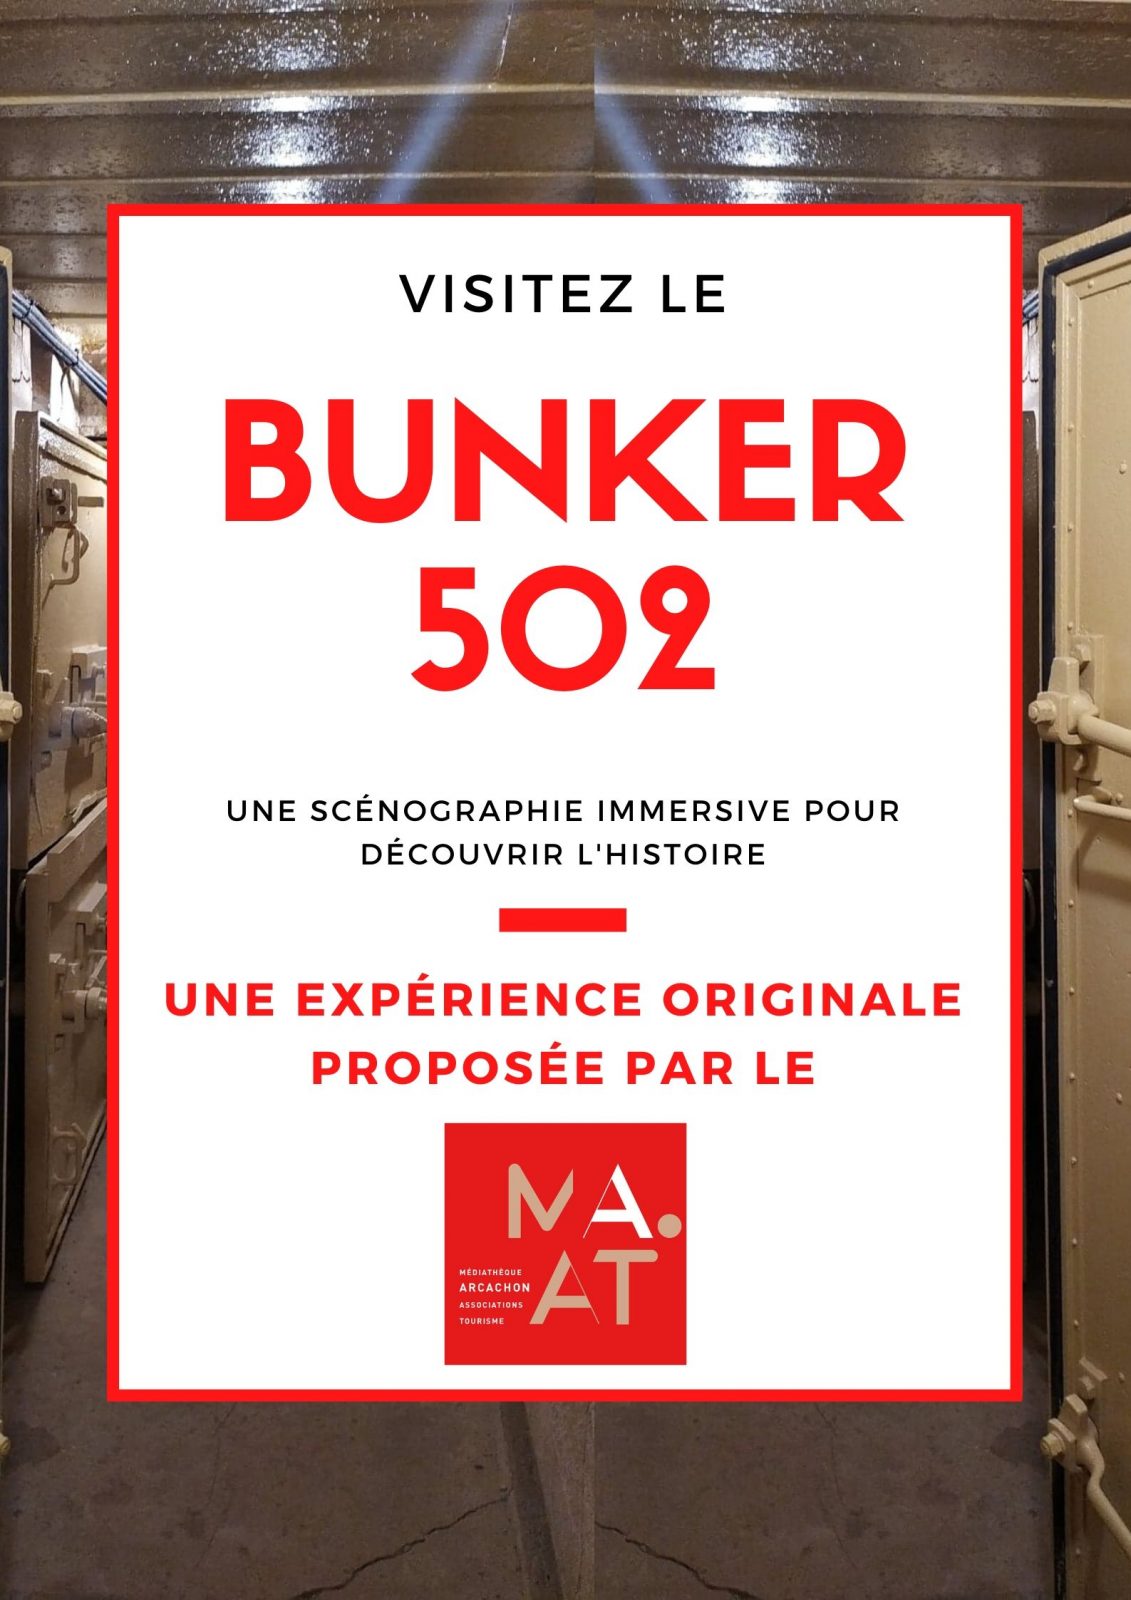 BUNKER 502